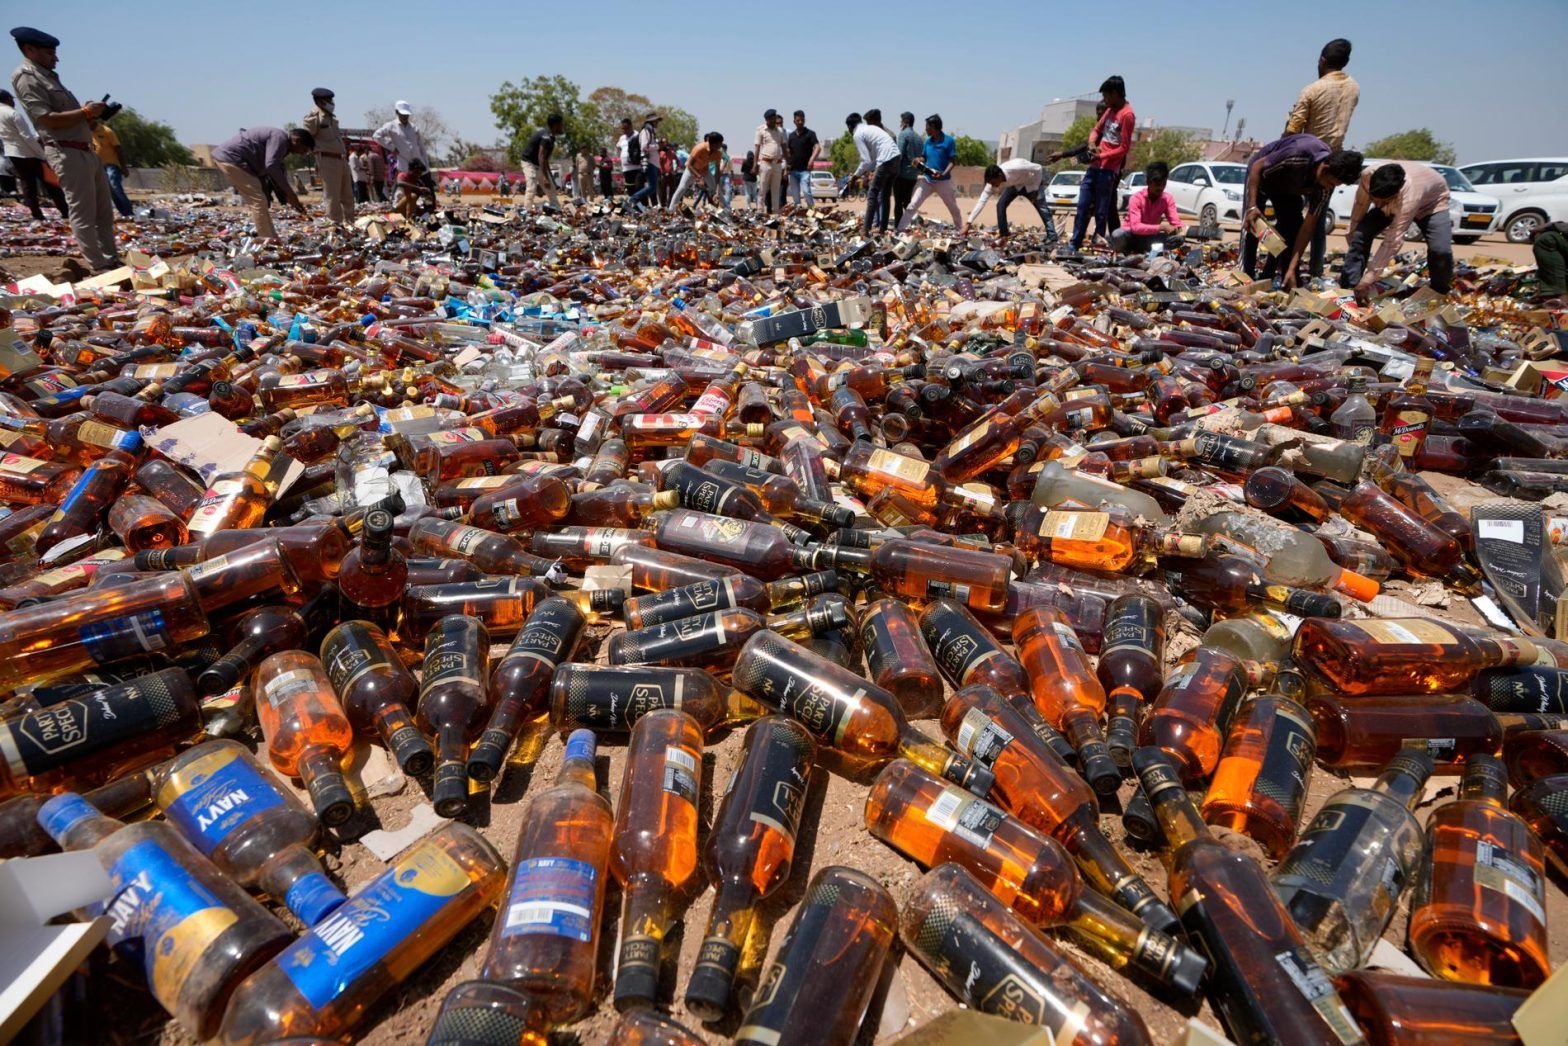 Alkooli vret 31 njerëz në Indi